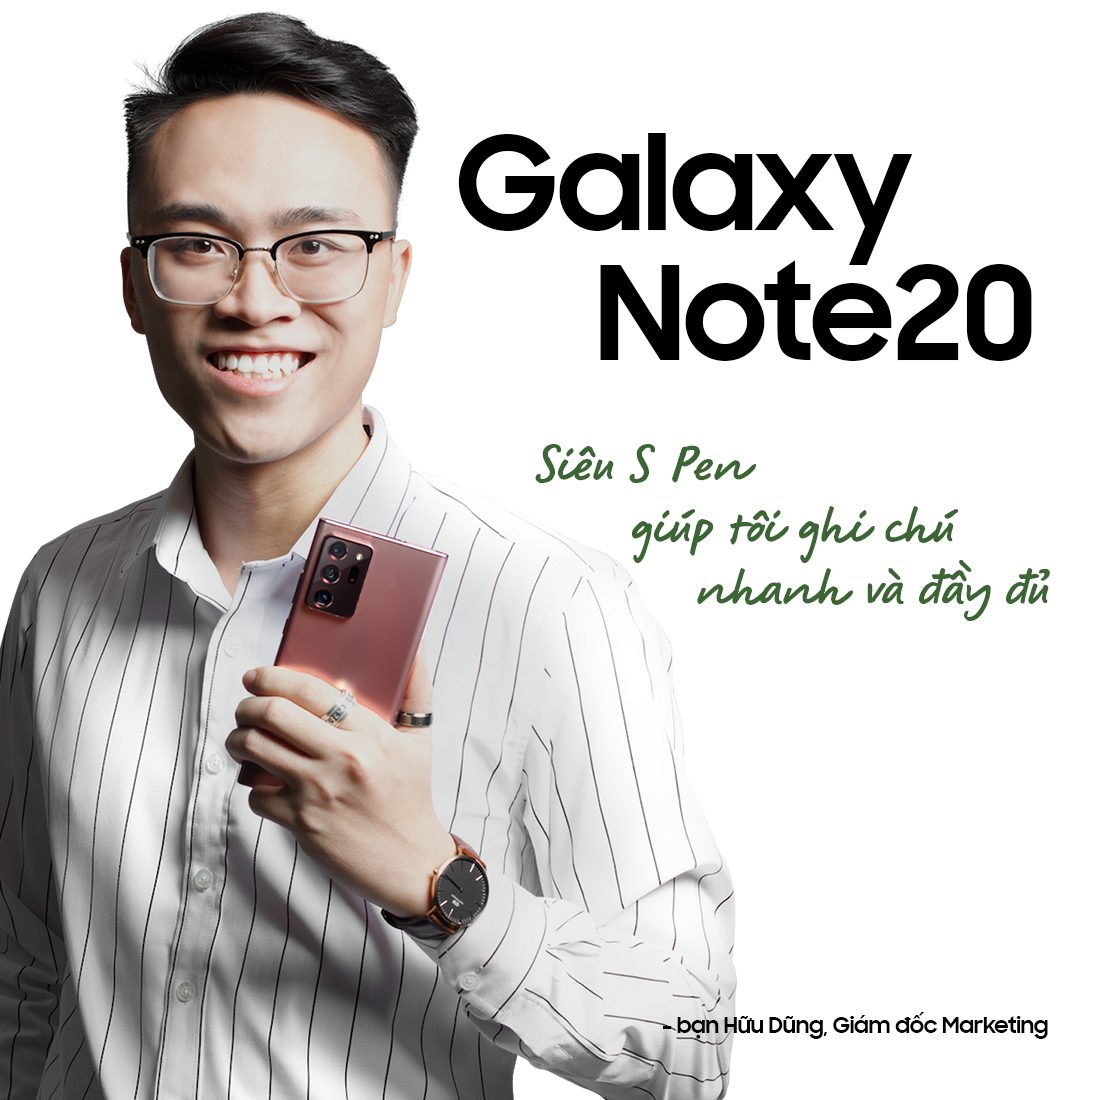 “Quyền năng” từ Galaxy Note trong mắt người dùng - ảnh 3